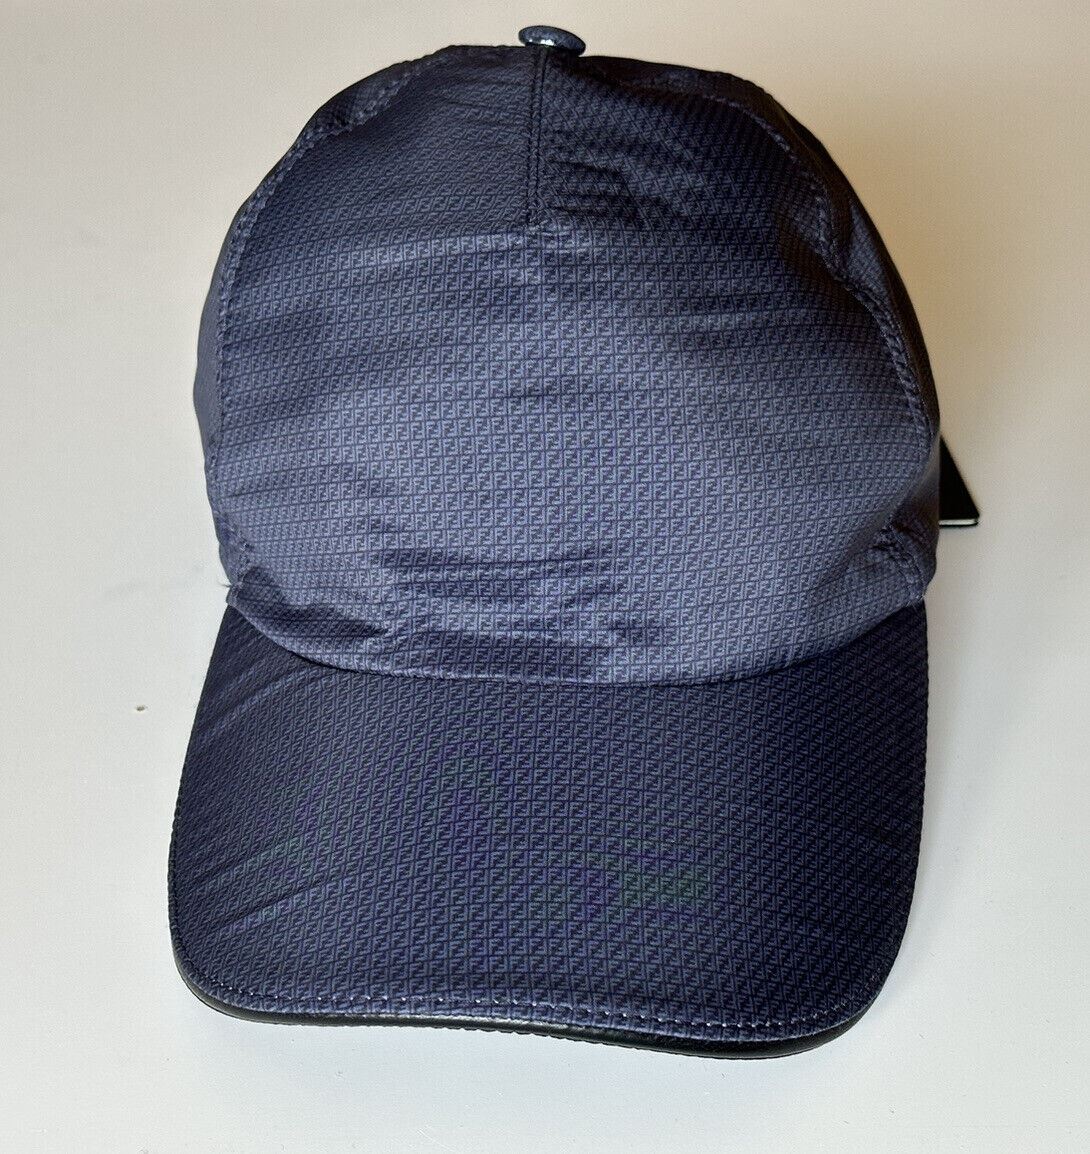 Бейсболка Fendi за 550 долларов США, темно-синяя шляпа, сделано в Италии FXQ768 